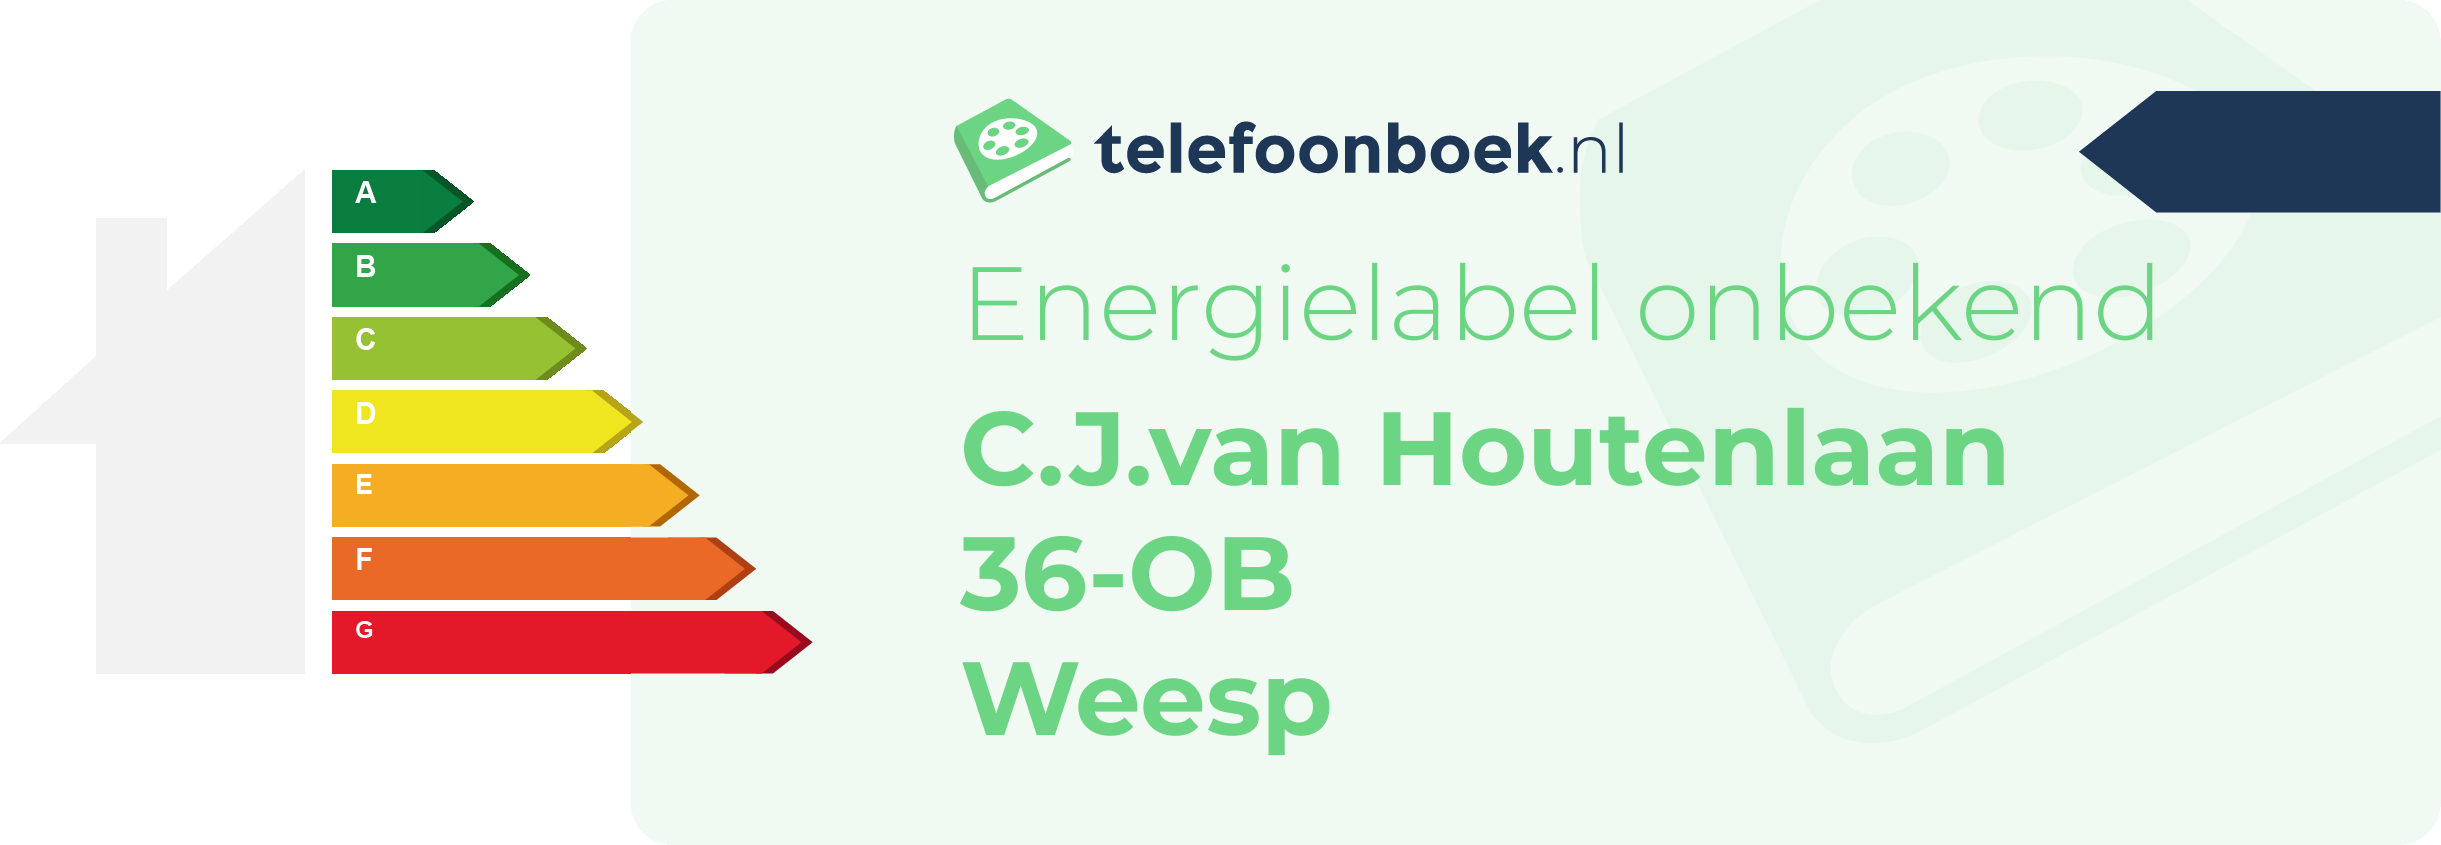 Energielabel C.J.van Houtenlaan 36-OB Weesp